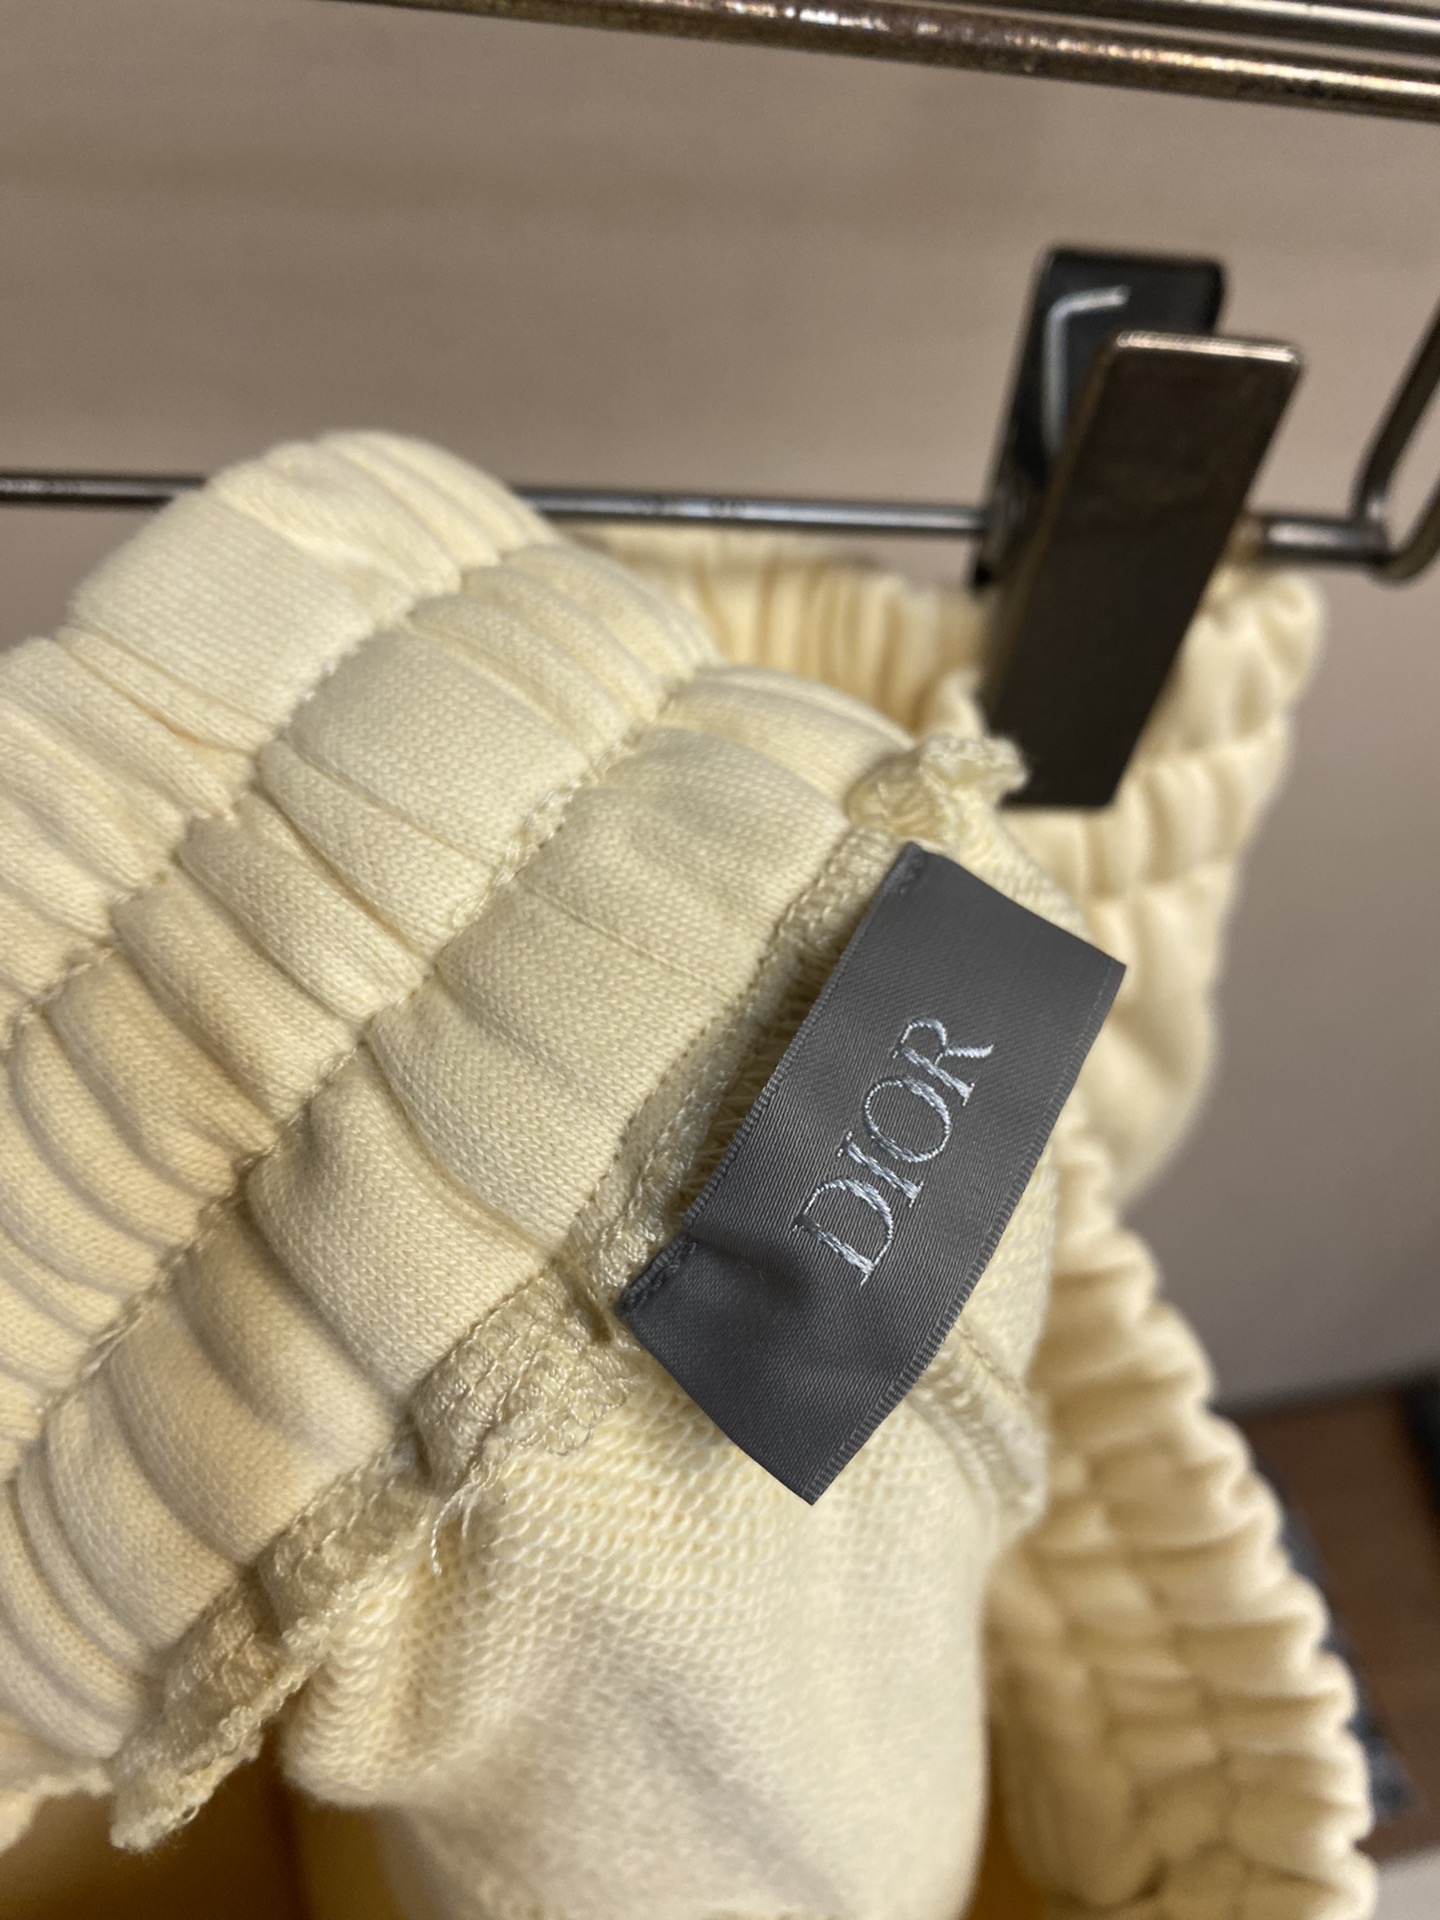 Dior24SS春夏新品47系列上市高克重毛圈棉布拼接抽绳短裤男女同款经典品牌字母刺绣标识设计风格加上2